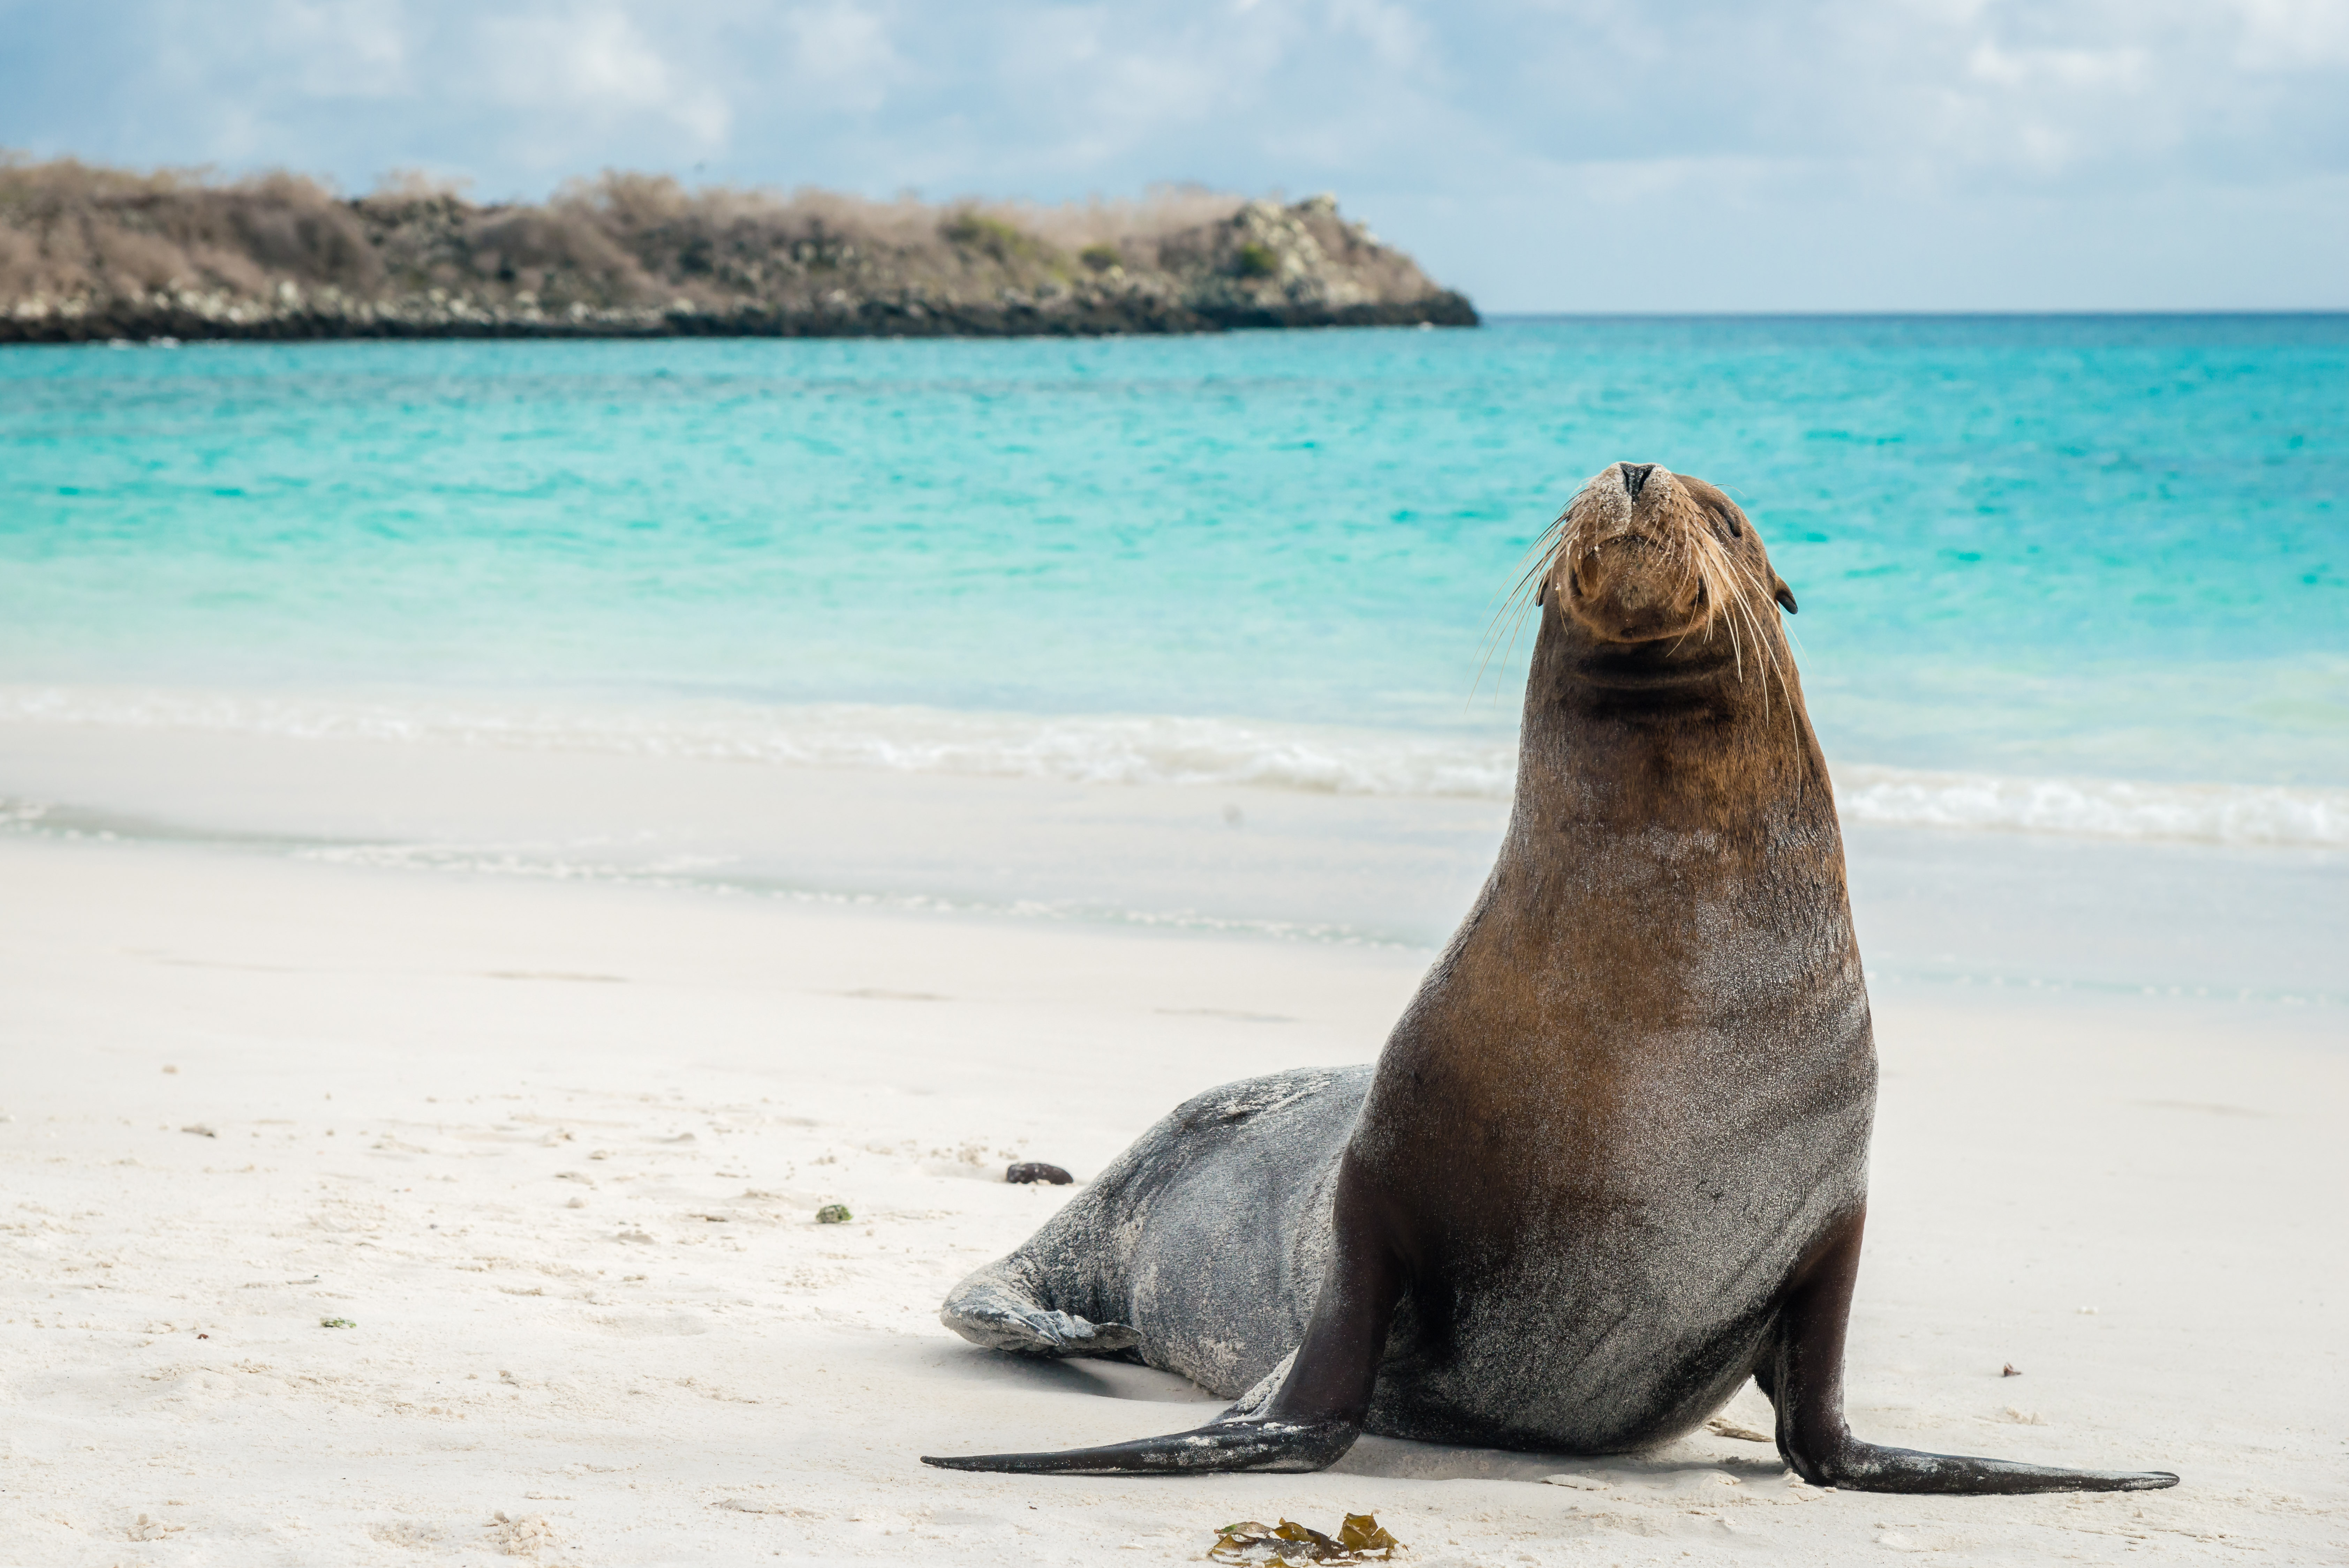 Vacaciones en Galapagos 2019 desde GYE y QUITO